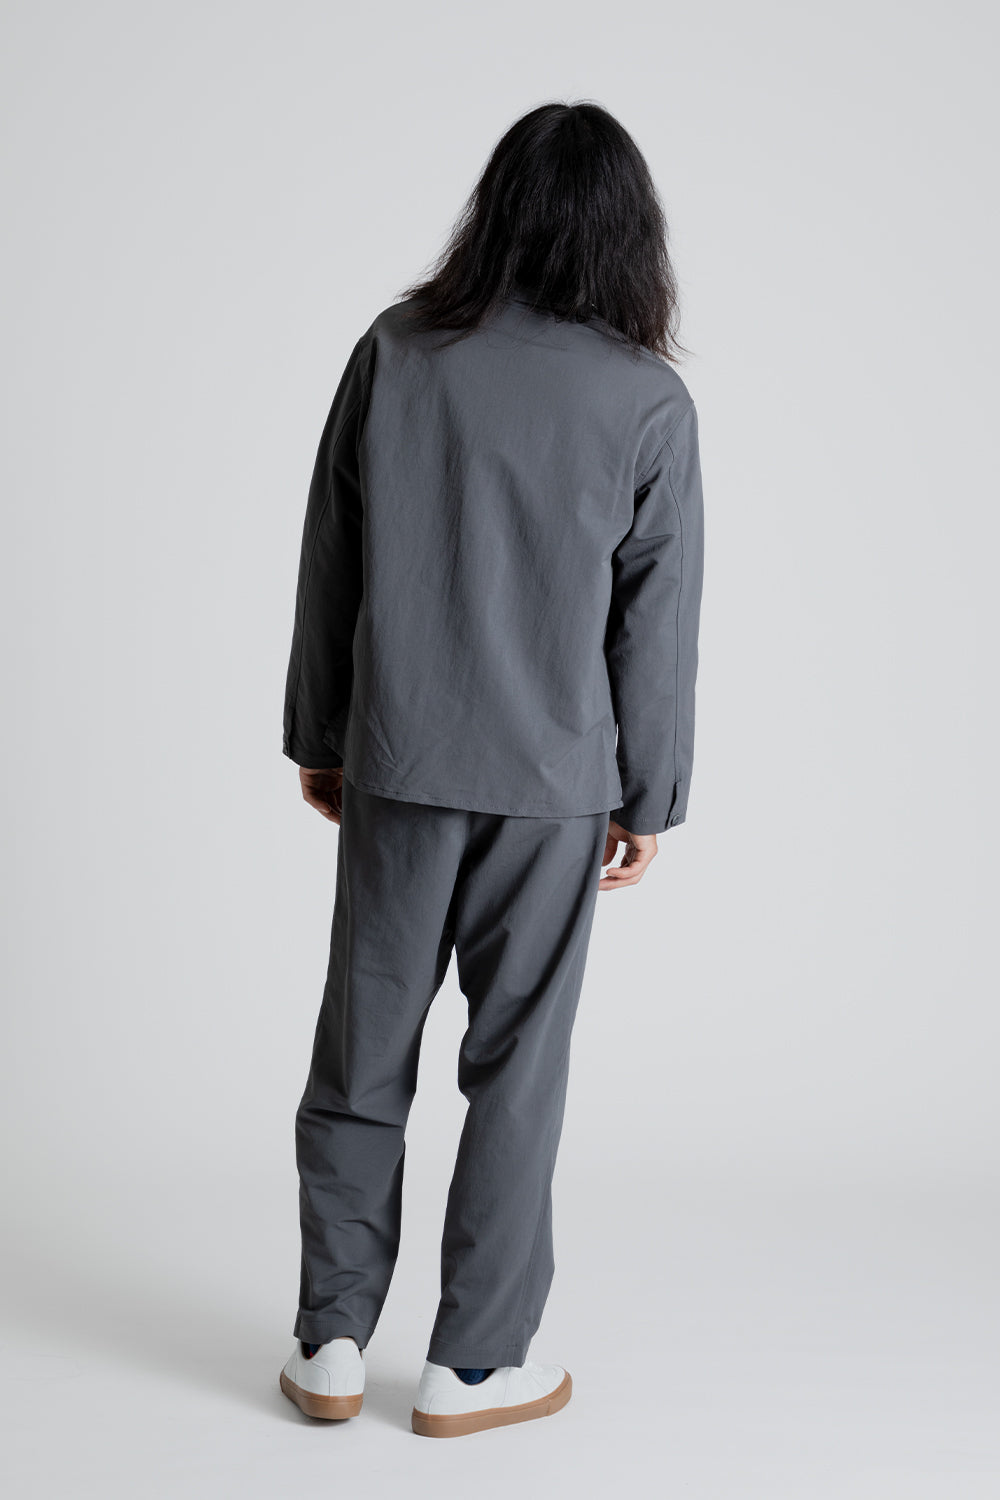 Nanamica ALPHADRY Shirt Jacket in Gray